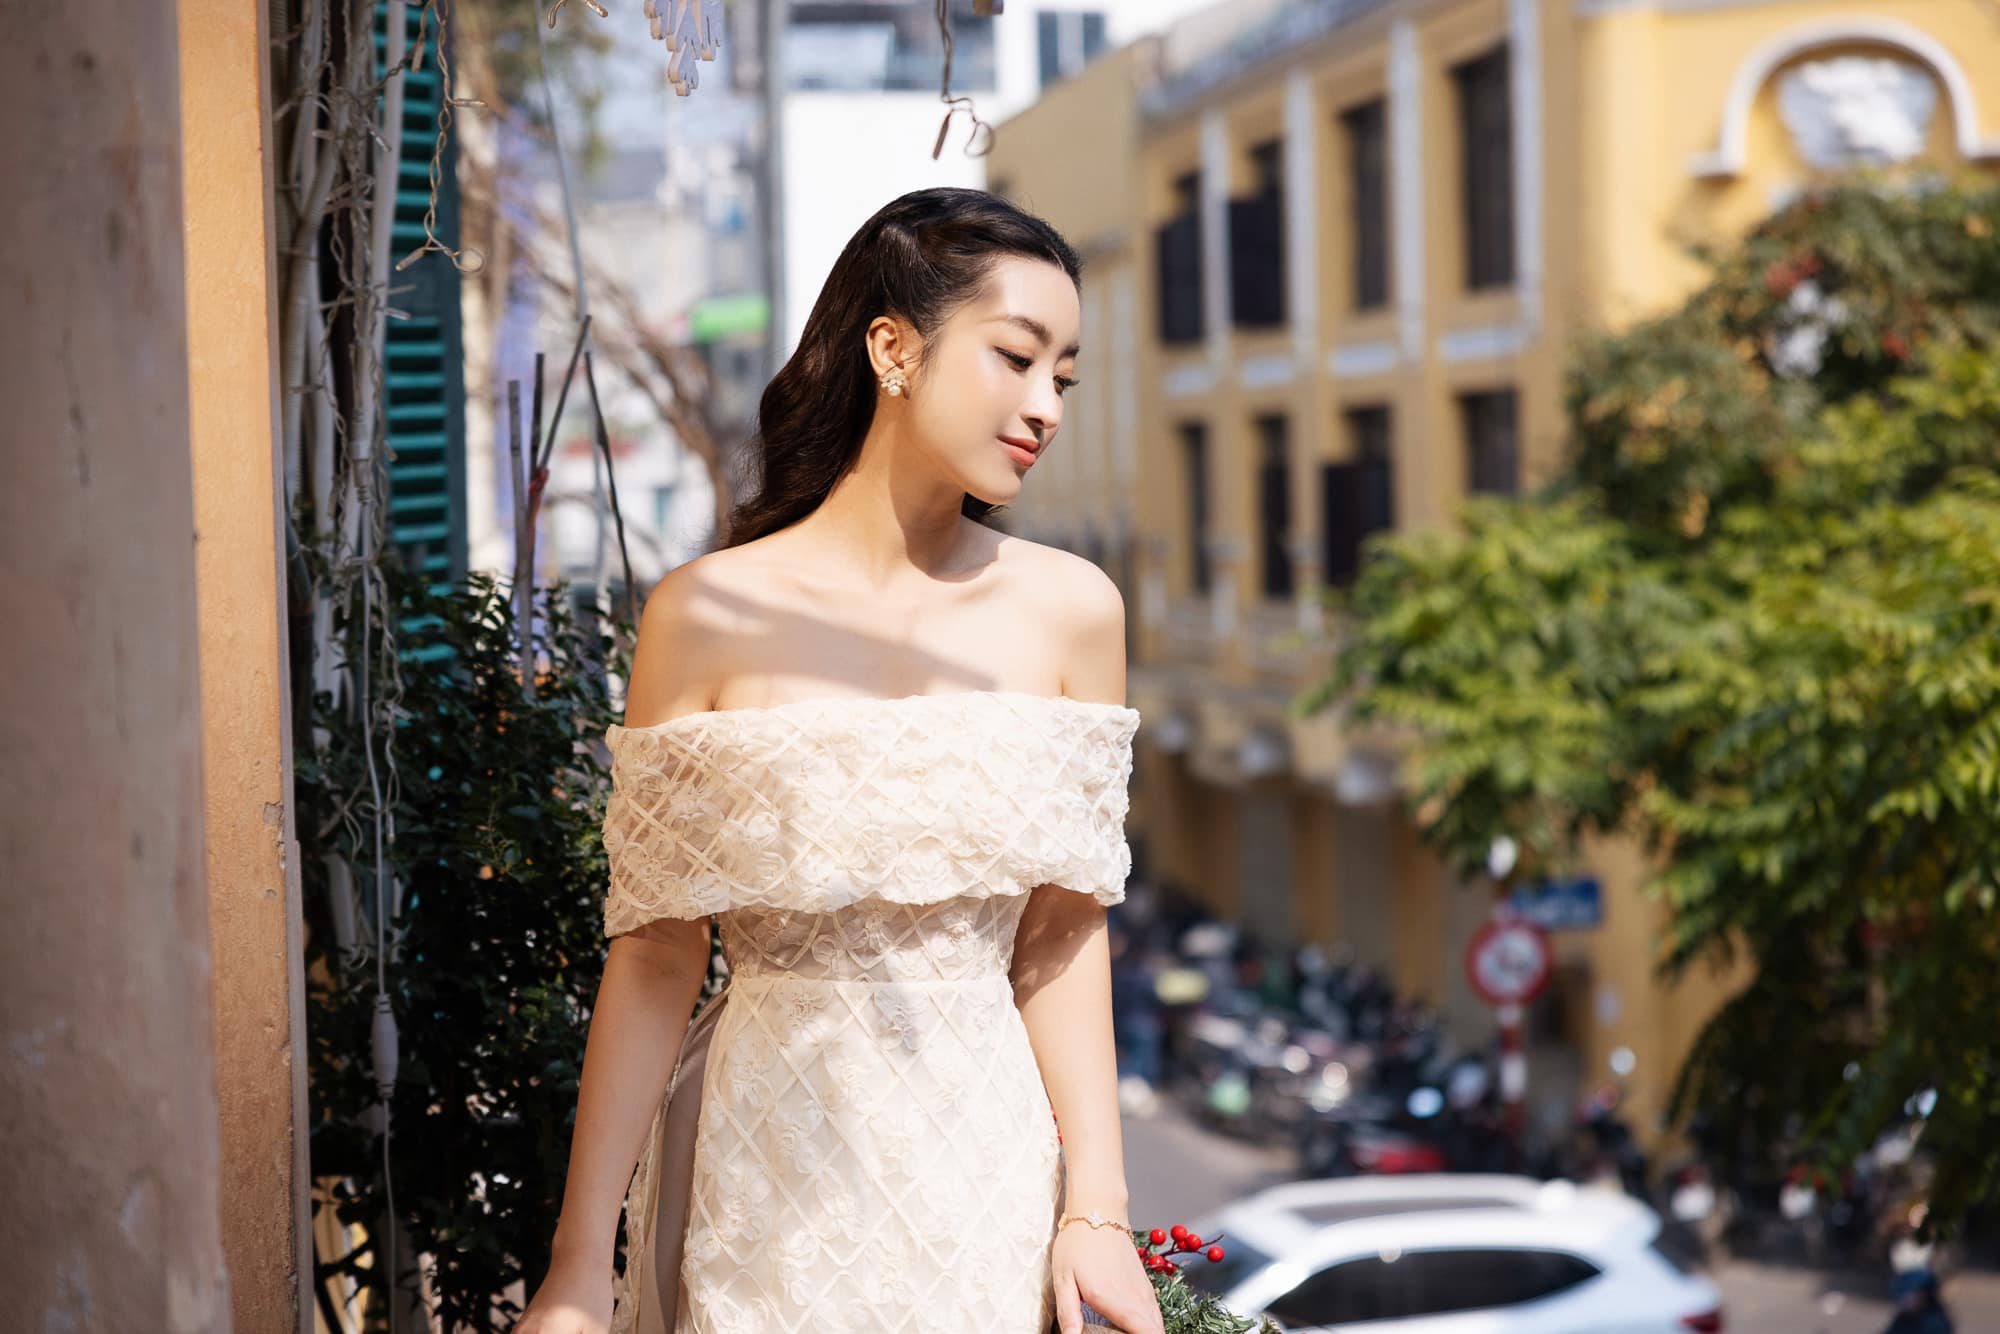 Hoa hậu nghèo nhất Việt Nam sau 7 năm đăng quang giờ là vợ chủ tịch, có hãng thời trang riêng - Ảnh 6.